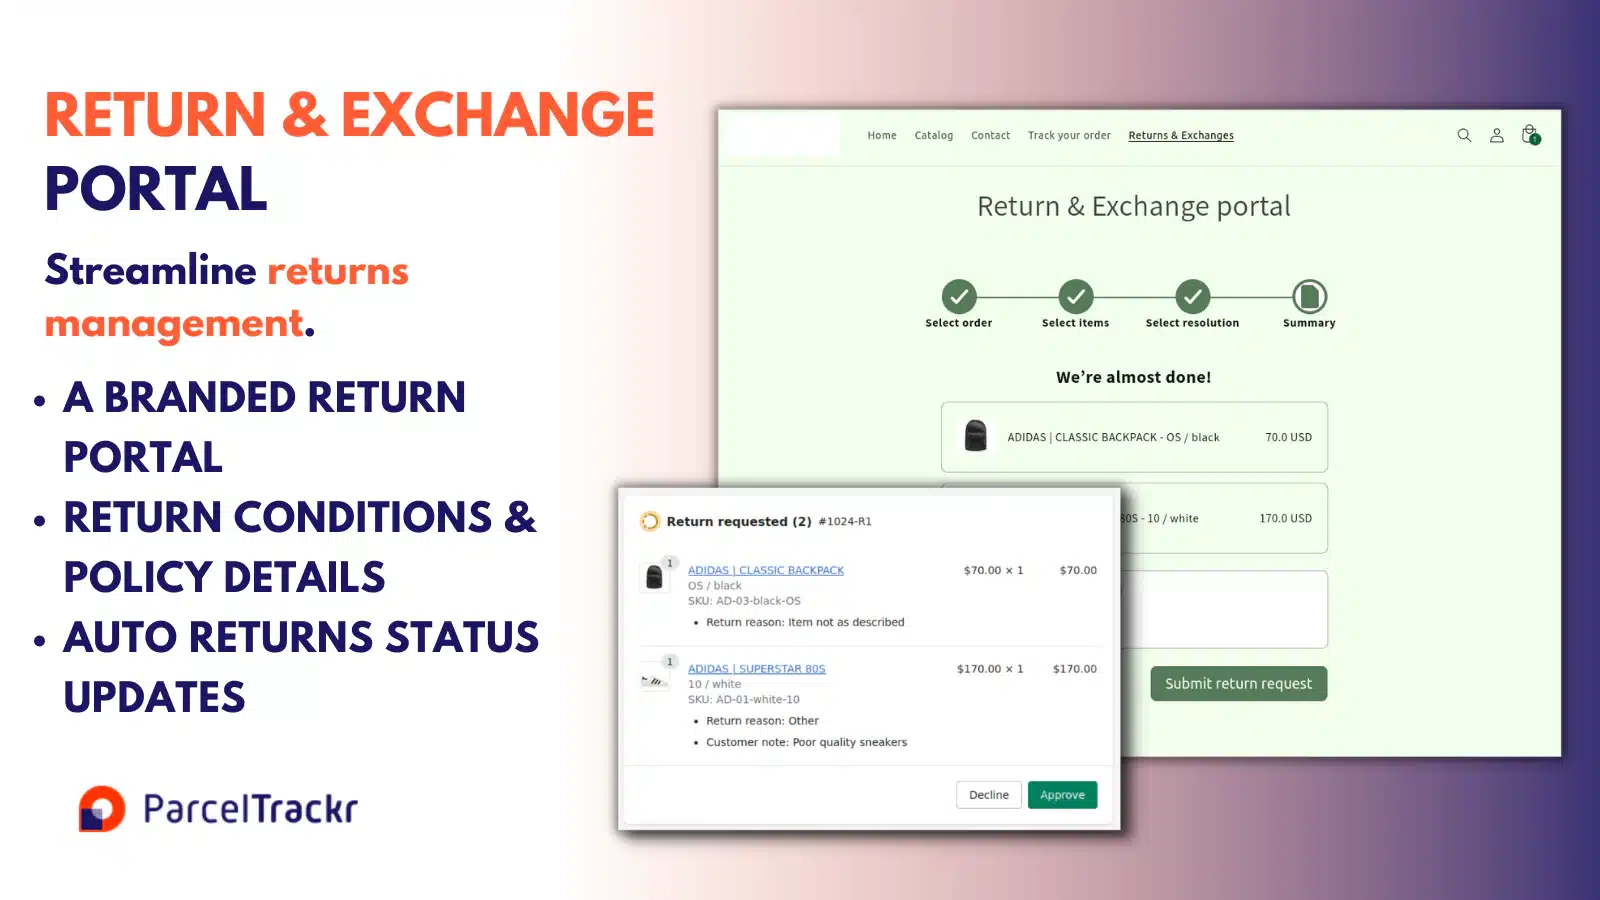 trackr-order-tracking-returns-app-exchange-portal